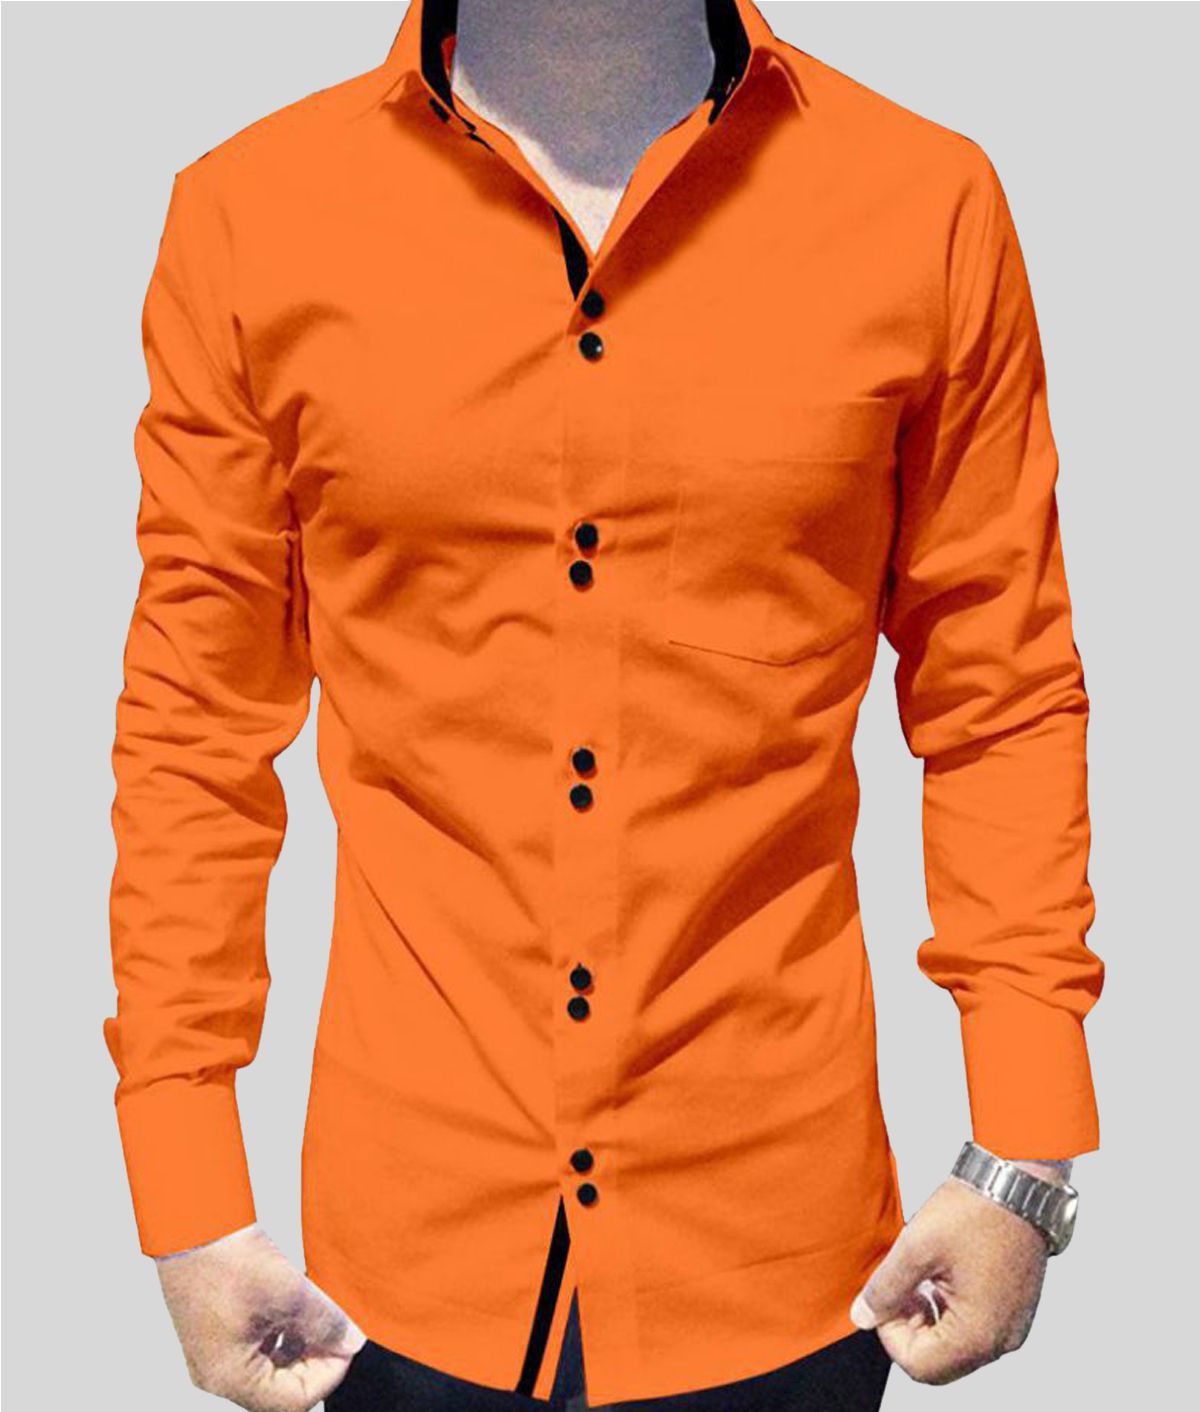 P&V - Orange Cotton Blend Slim Fit Men's Casual Shirt (Pack of 1)